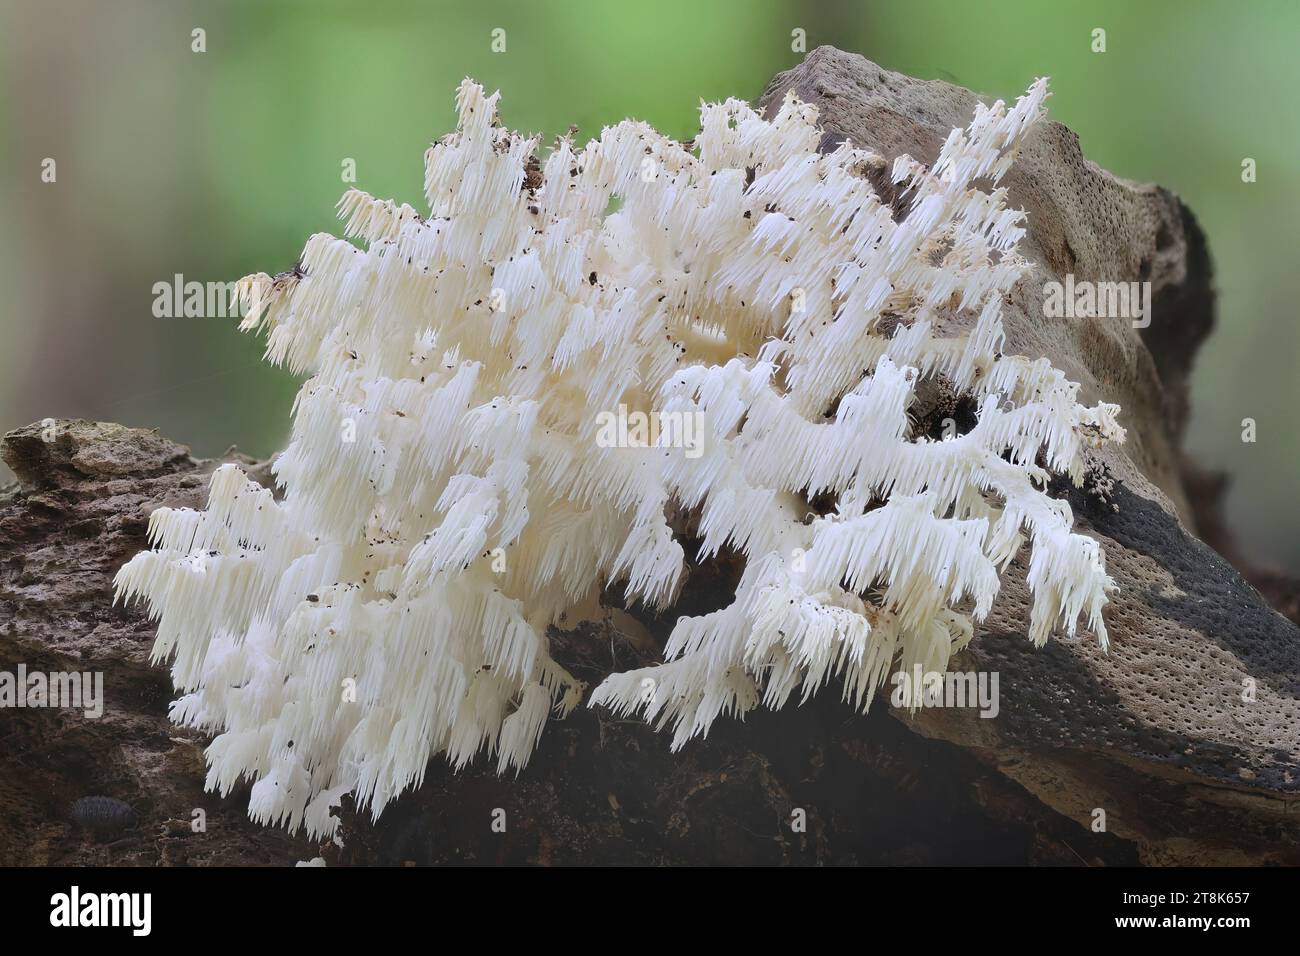 Kammzahnpilz, Korallenzahn (Hericium coralloides, Hericium clathroides), auf totem Holz, Deutschland, Mecklenburg-Vorpommern Stockfoto